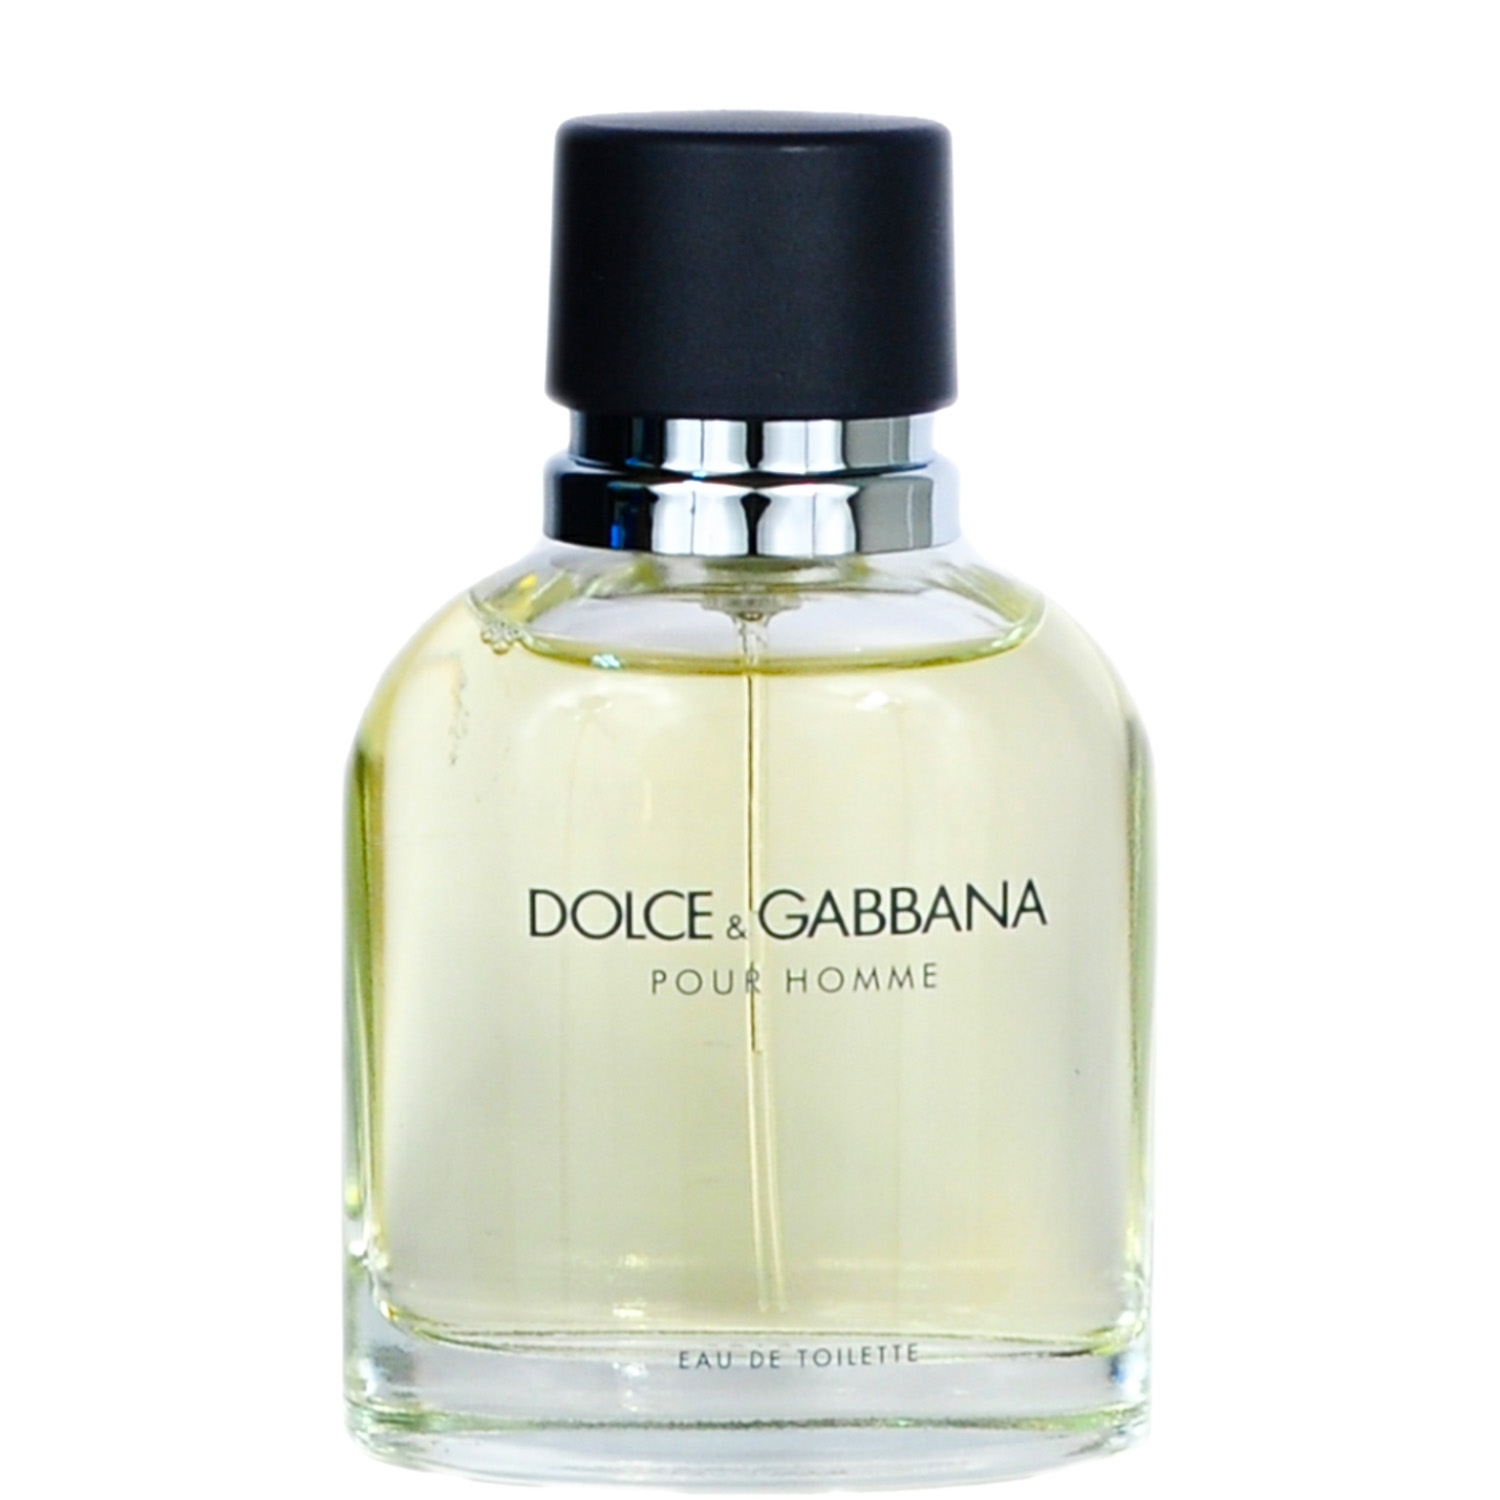 Dolce & Gabbana Pour Homme Eau de Toilette 75ml